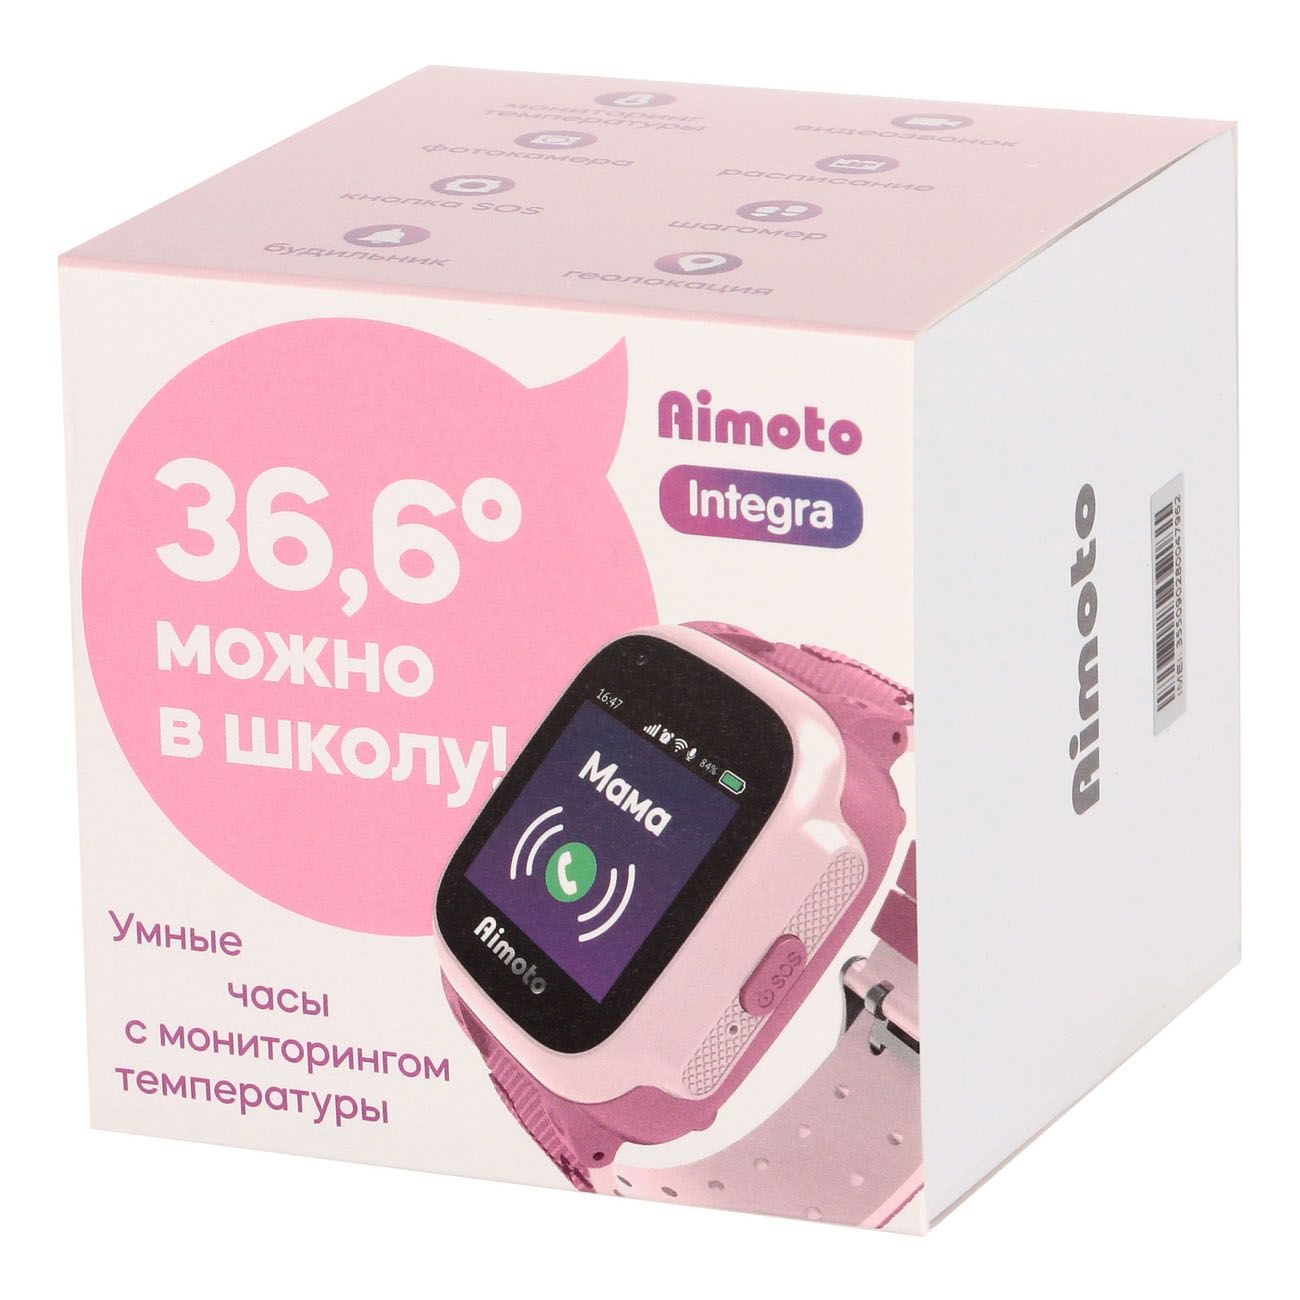 Детские смарт часы Аймото 4g с GPS. Часы с трекером Aimoto Integra 4g. Детские умные часы Aimoto Integra 4g. Aimoto Pro 4g.